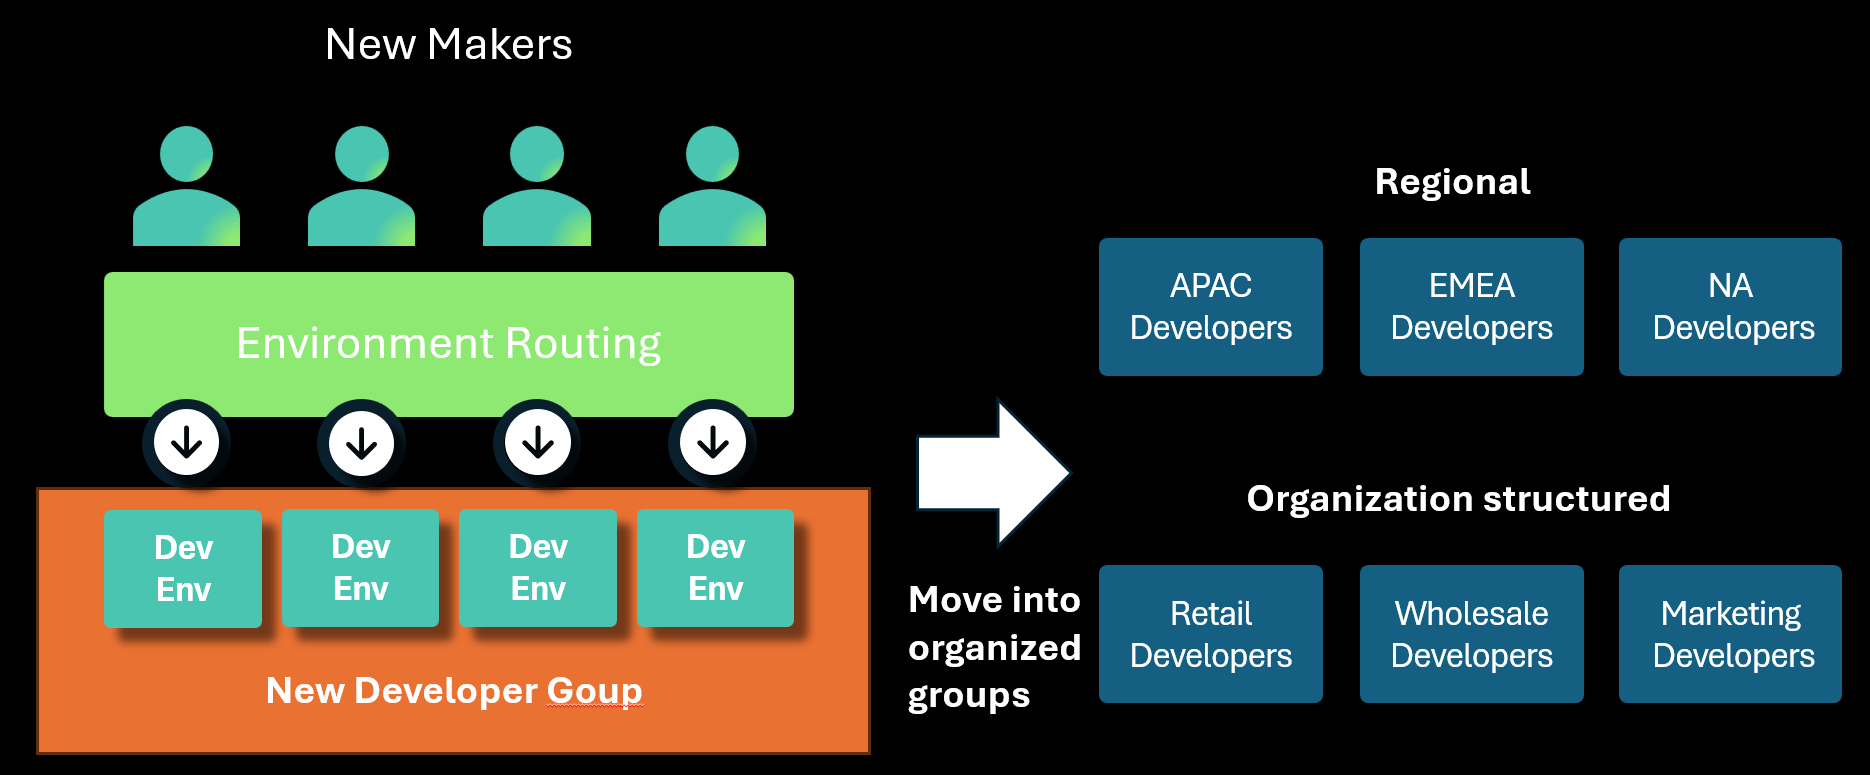 Diagramme illustrant le routage des environnements créant des environnements de développement dans le groupe désigné qui sont ensuite déplacés vers des groupes plus structurellement spécifiques